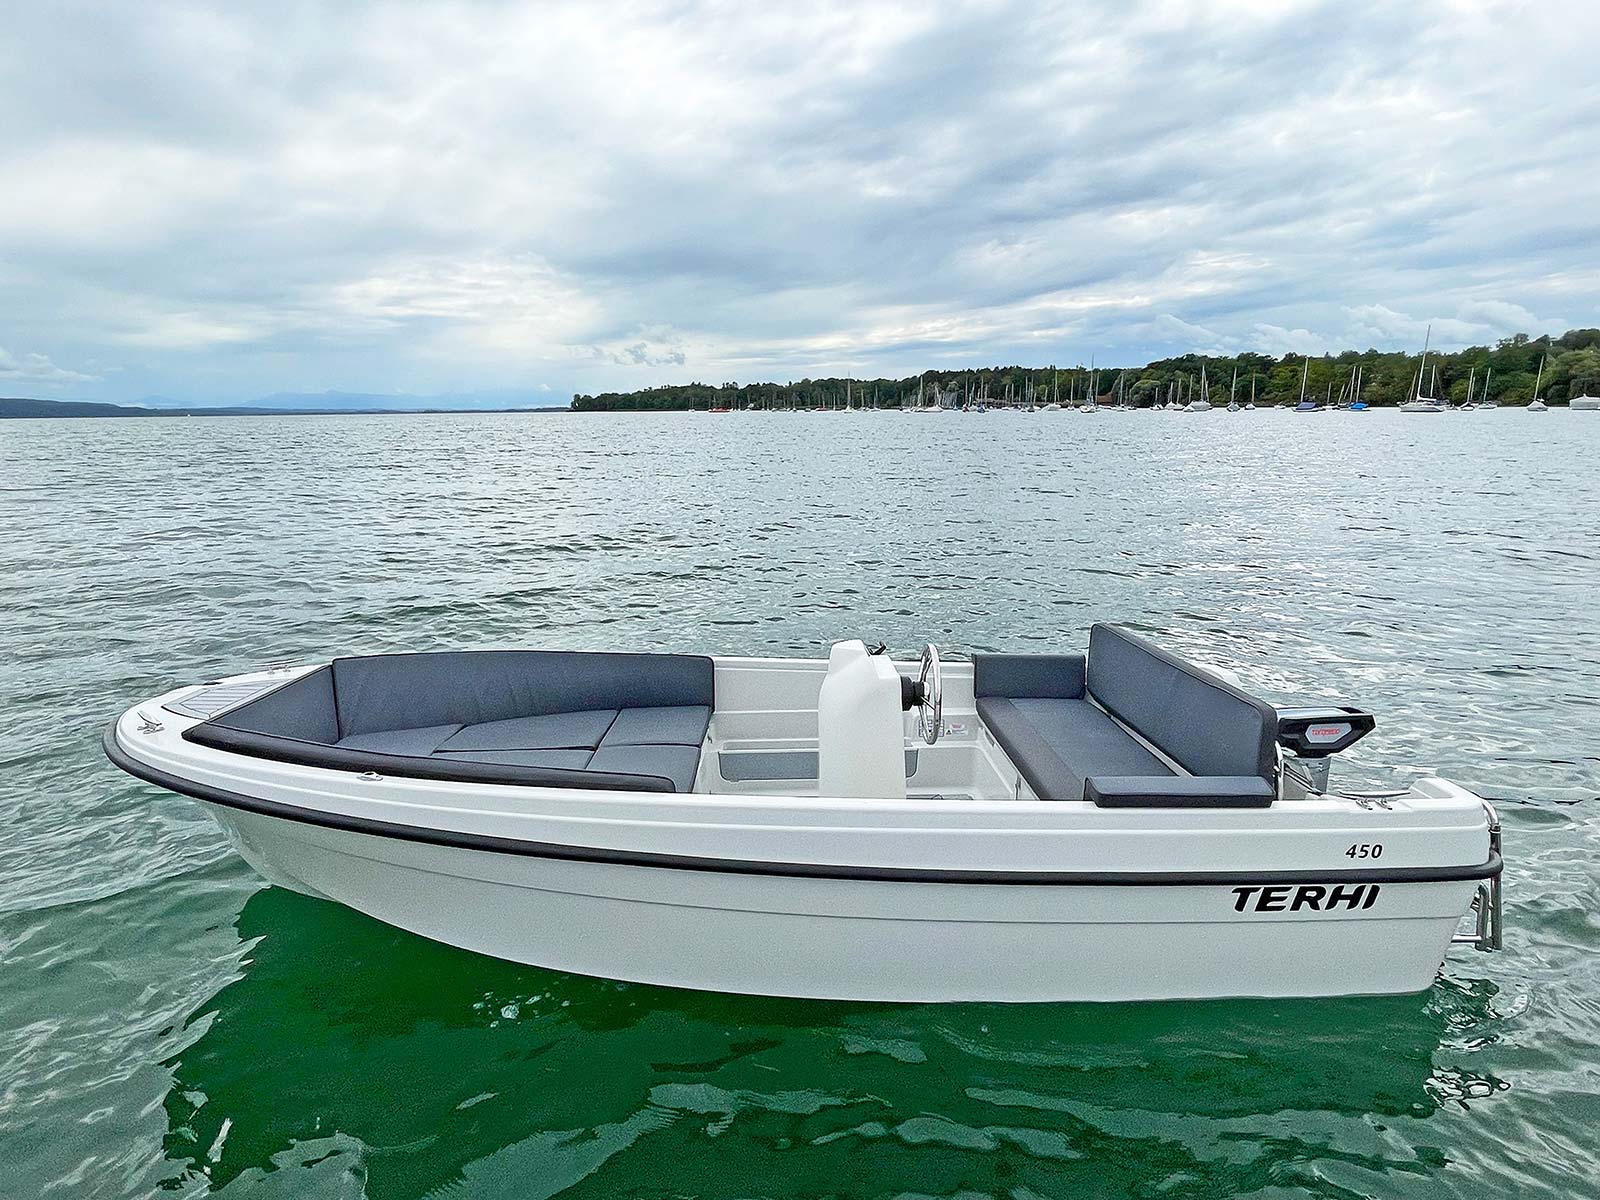 Terhi-450-Sloep-Boat-Solutions-Utting-Ammersee-04.jpg